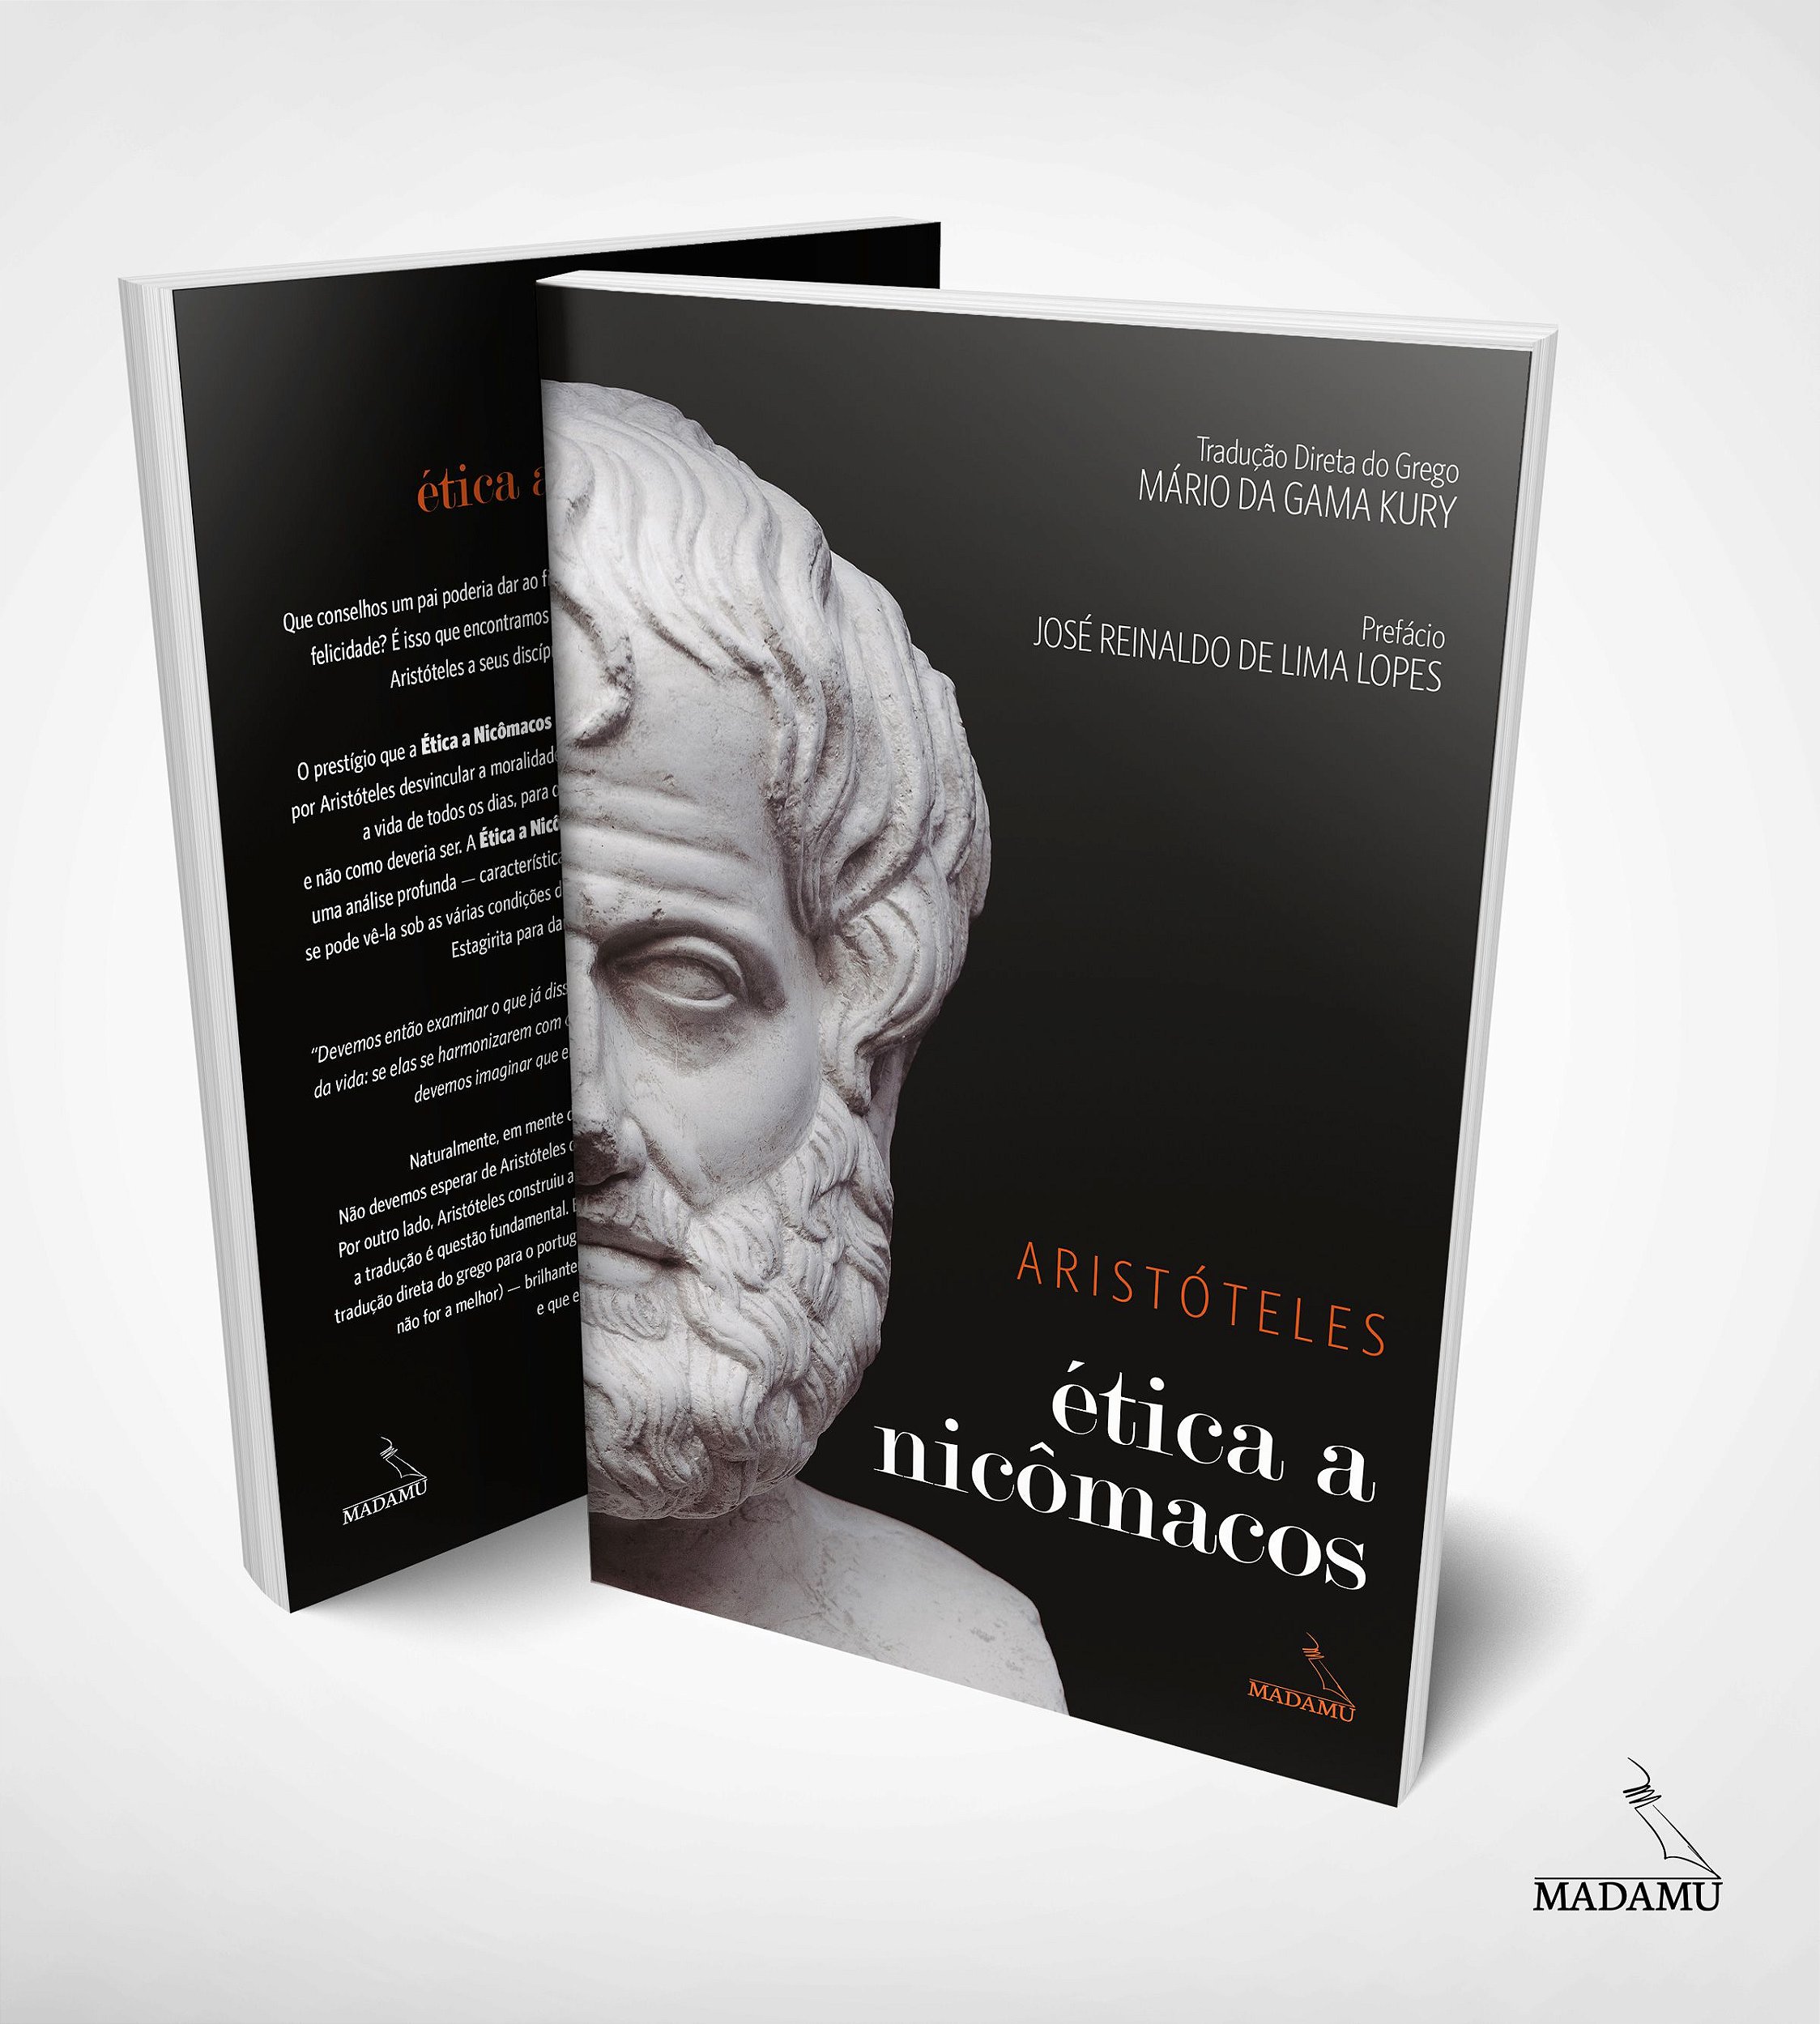 Metafísica de Aristóteles (Vol. II - Texto grego com tradução ao